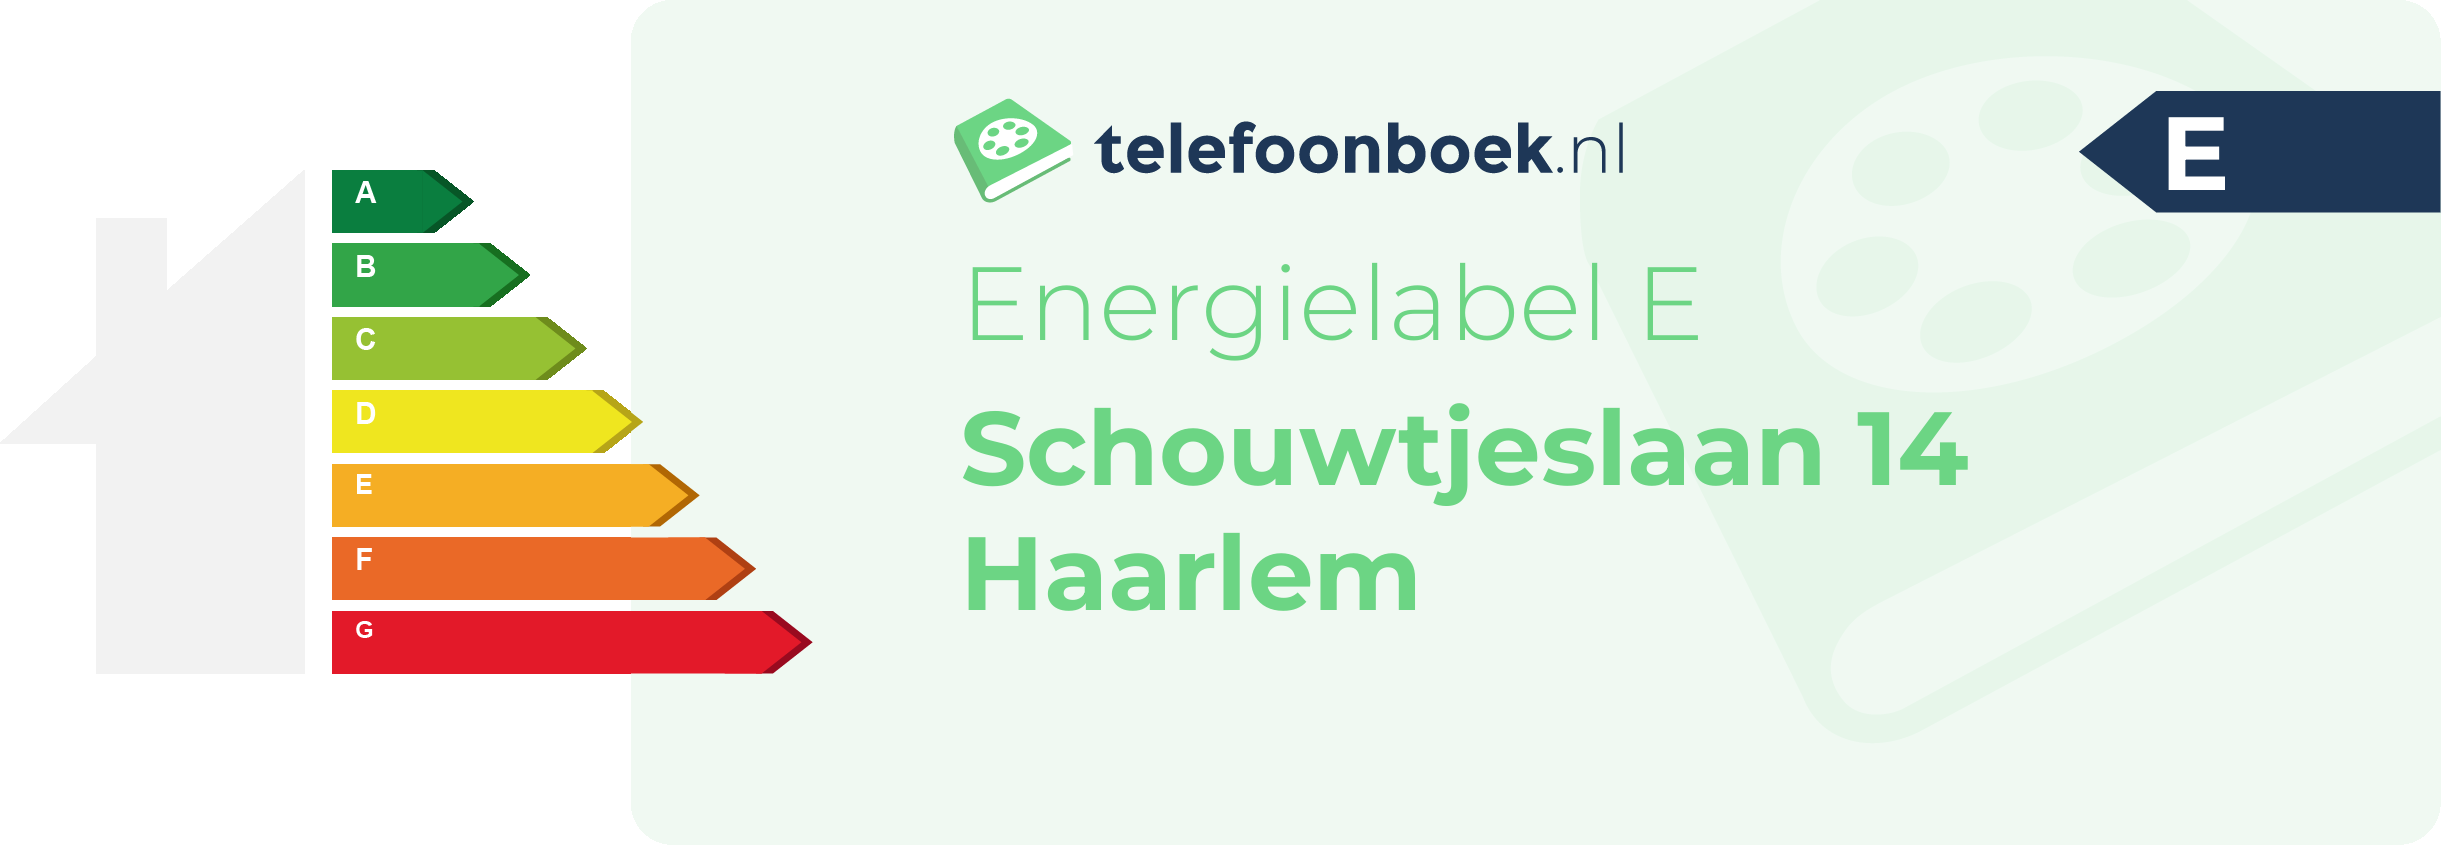 Energielabel Schouwtjeslaan 14 Haarlem